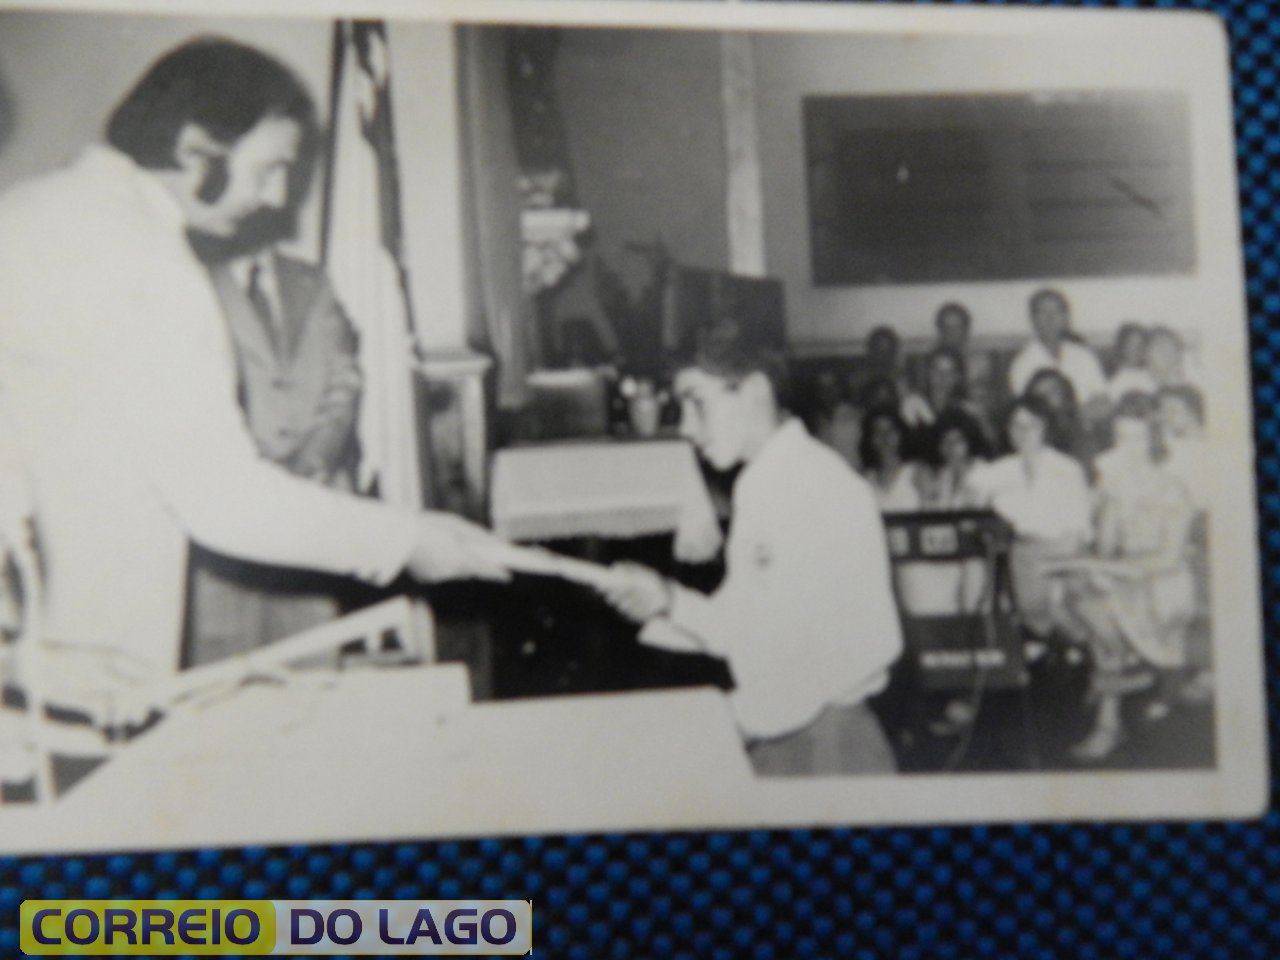 João Rosa Correia recebendo certificado de 8ª série das mãos do prof. Adelar Delatorre. Vera Cruz do Oeste 1976.